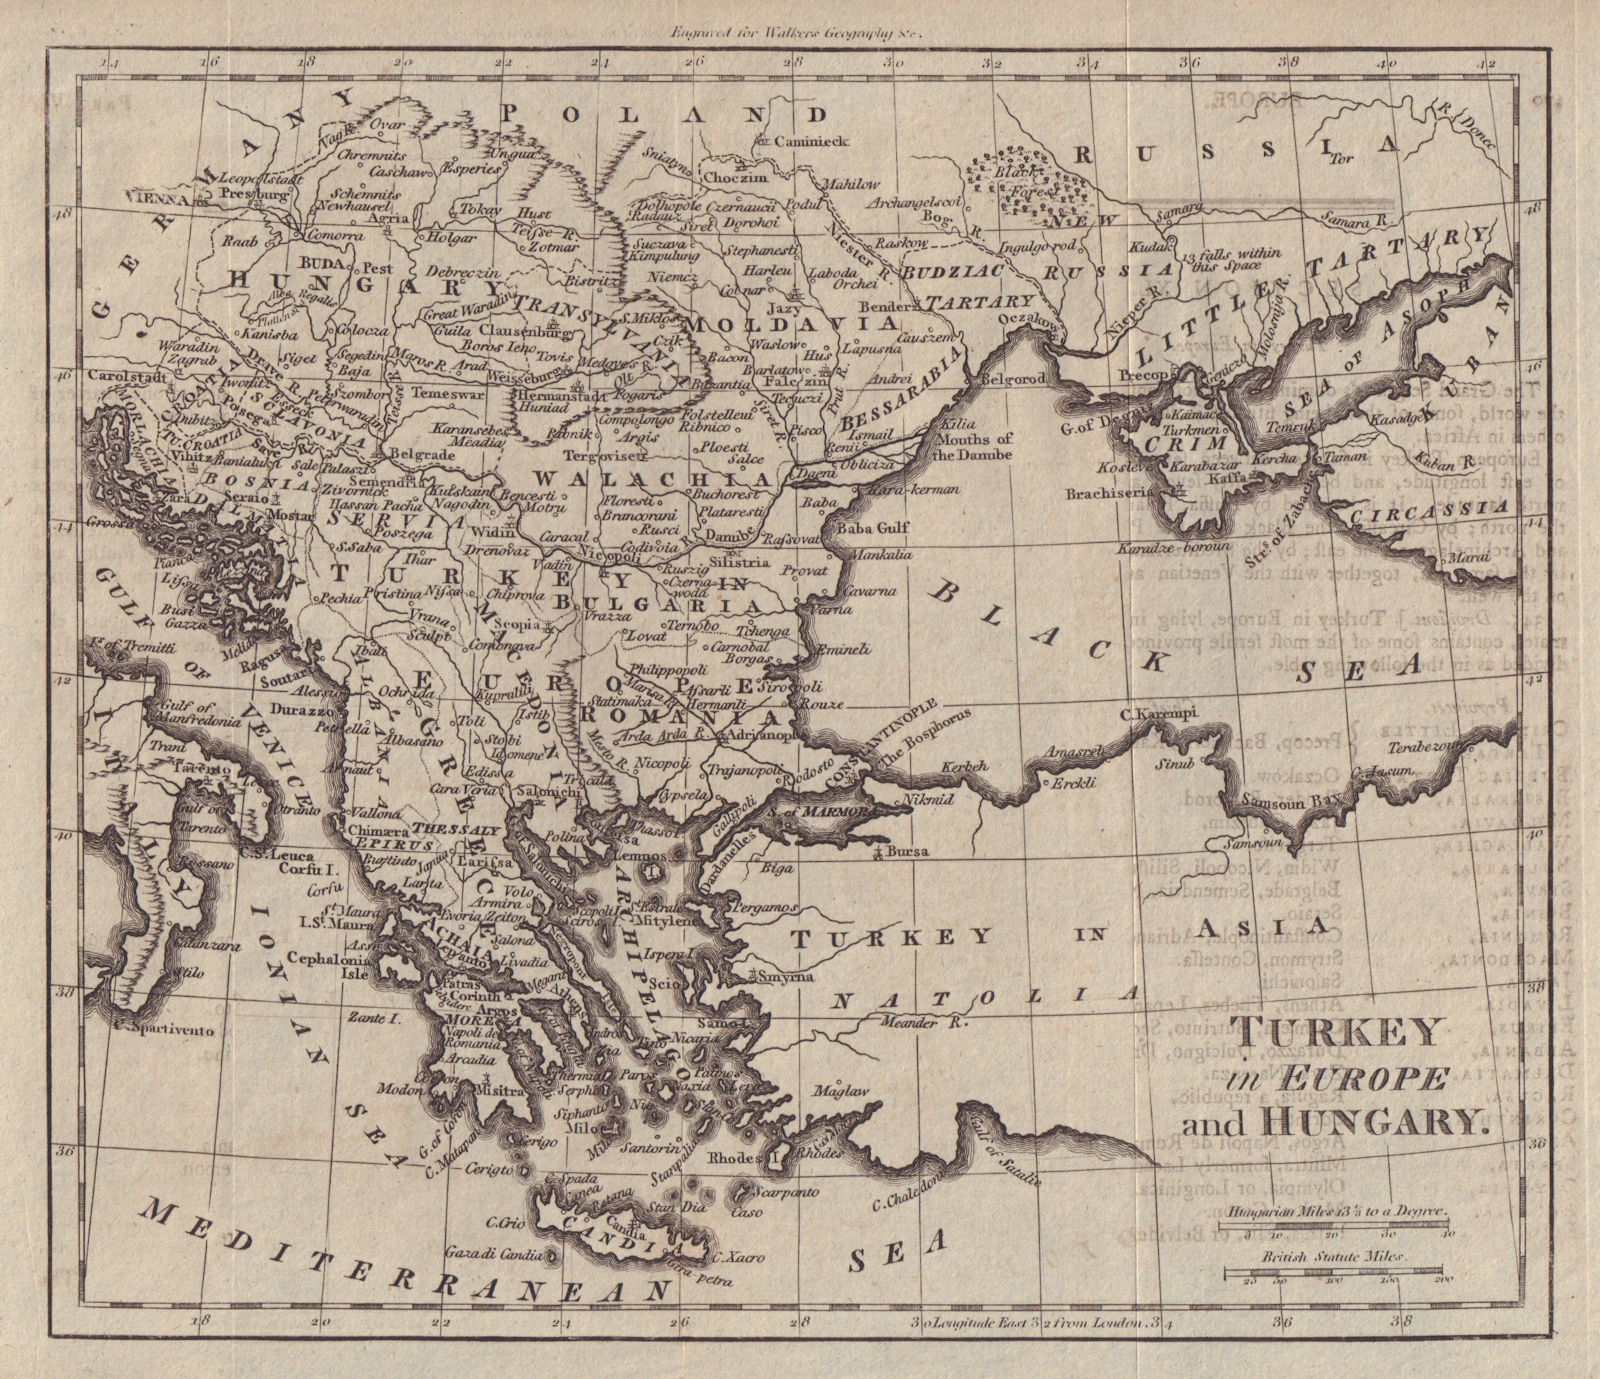 Turkey in Europe & Hungary. Balkans Ukraine Greece Wallachia. WALKER c1795 map